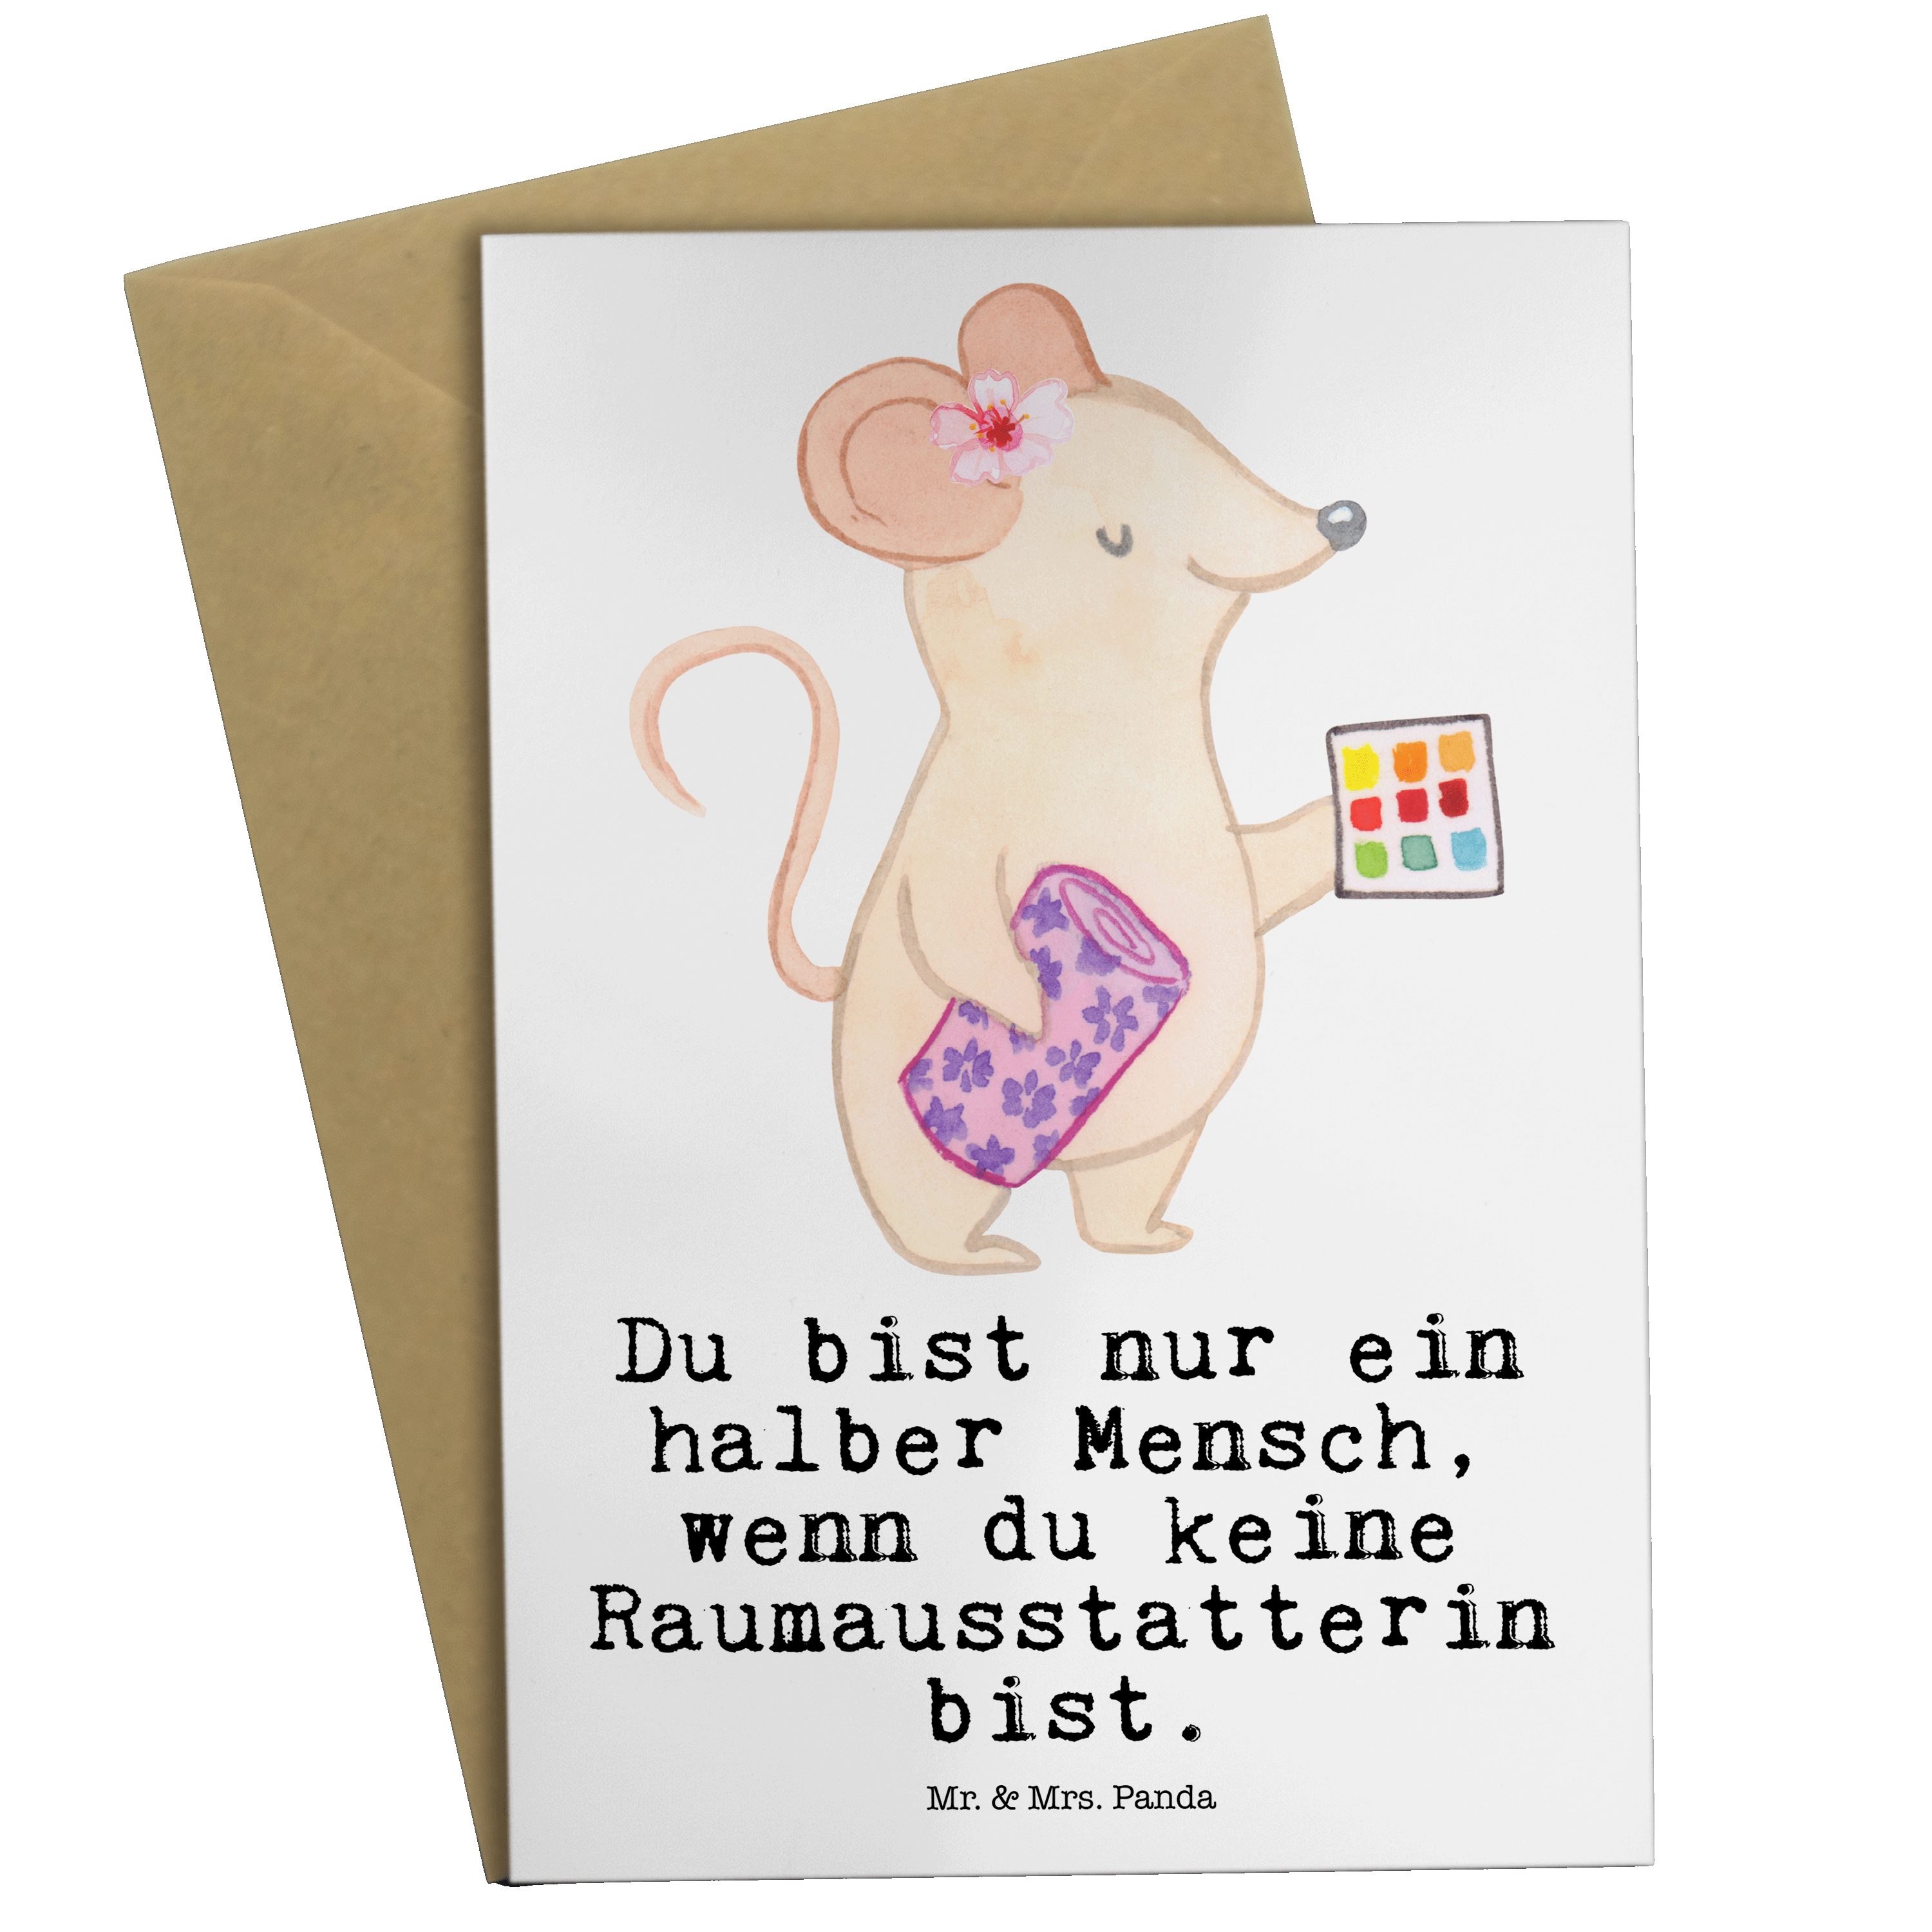 Mr. & Mrs. Panda Grußkarte Raumausstatterin mit Herz - Weiß - Geschenk, Geburtstagskarte, Rente